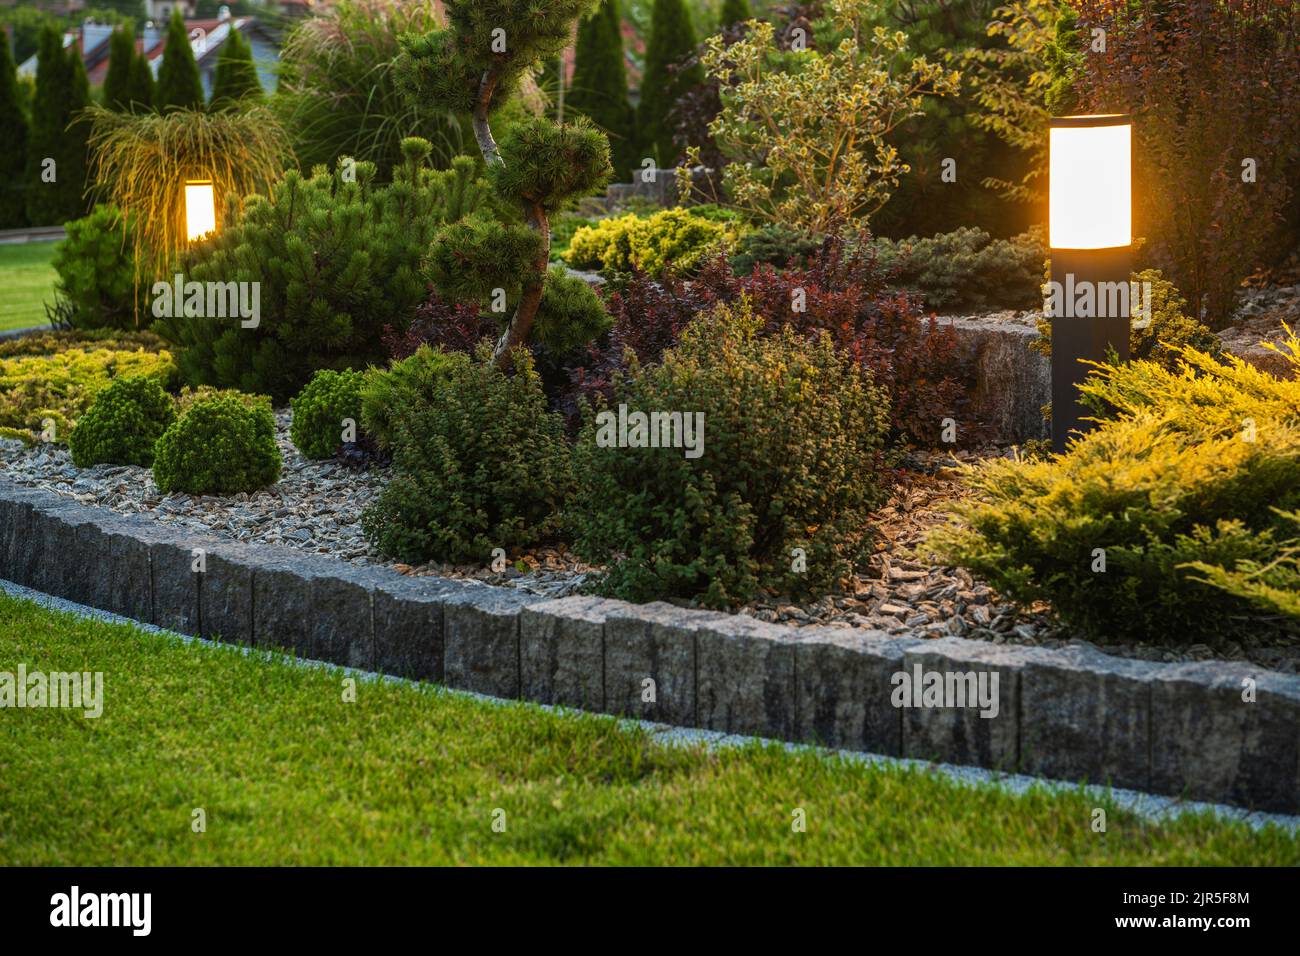 Éclairage extérieur moderne de jardin à LED à l'intérieur d'une belle cour résidentielle mature. Thème du jardinage et de l'aménagement paysager. Banque D'Images